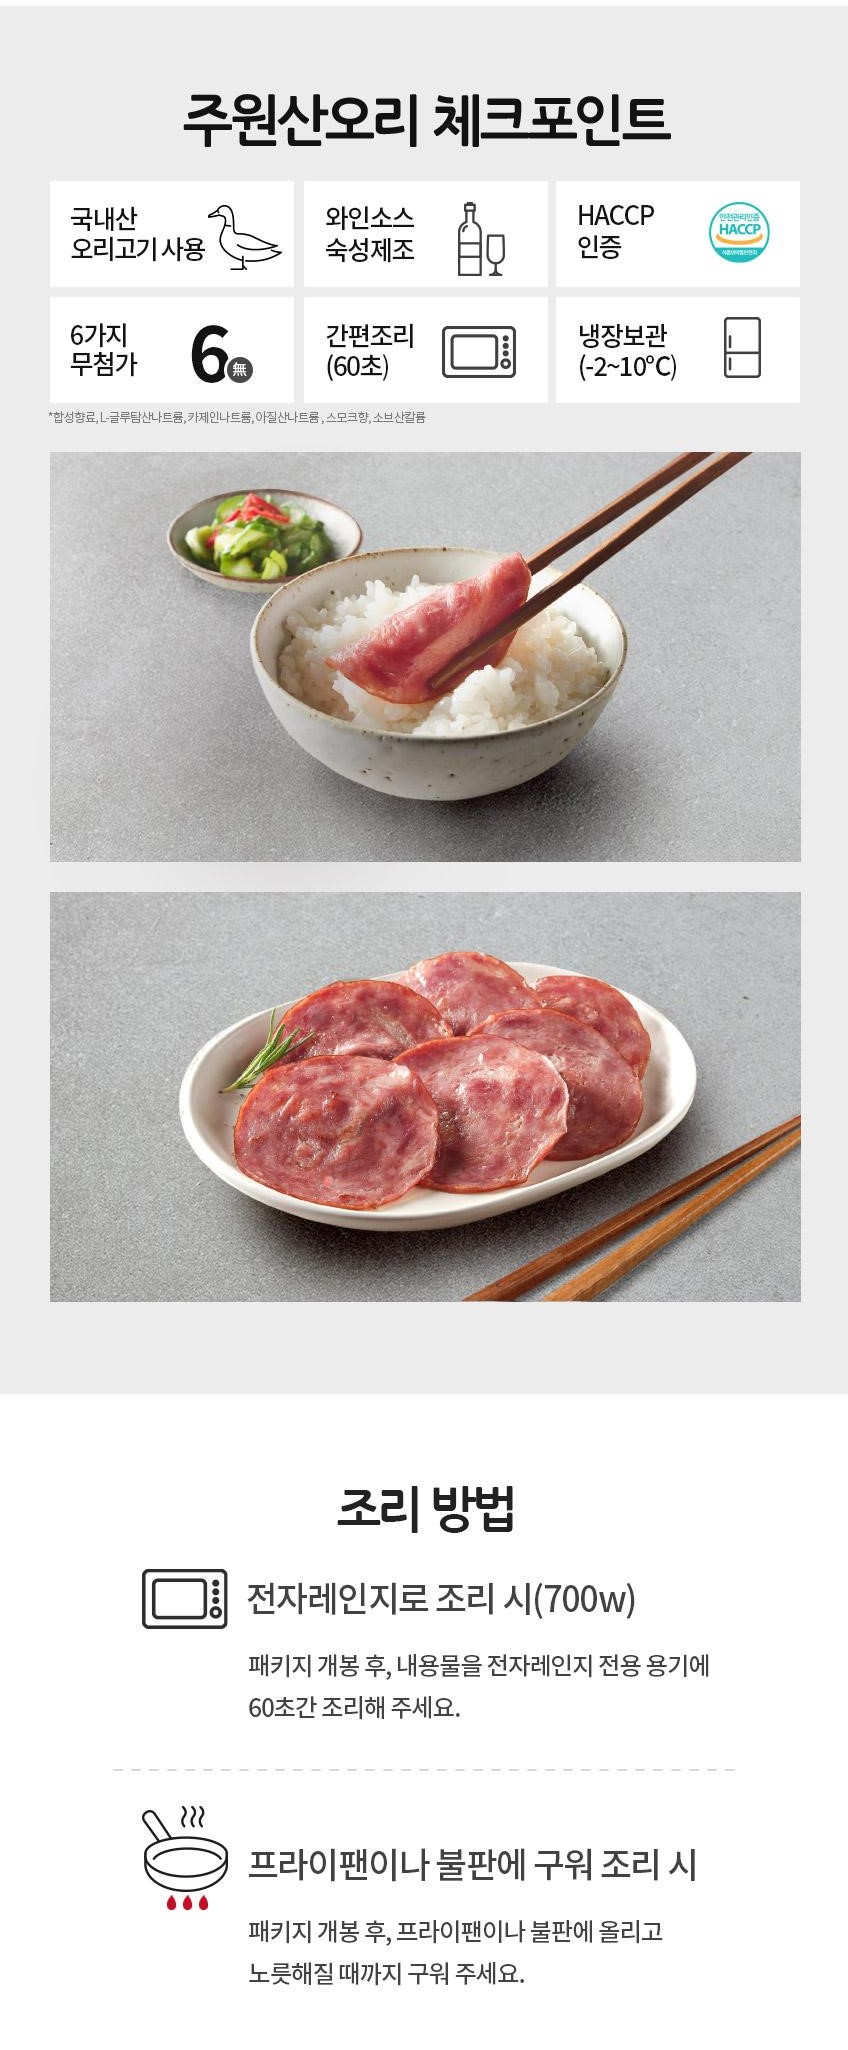 韓國食品-[Harim] Smoked Duck Slices 80g